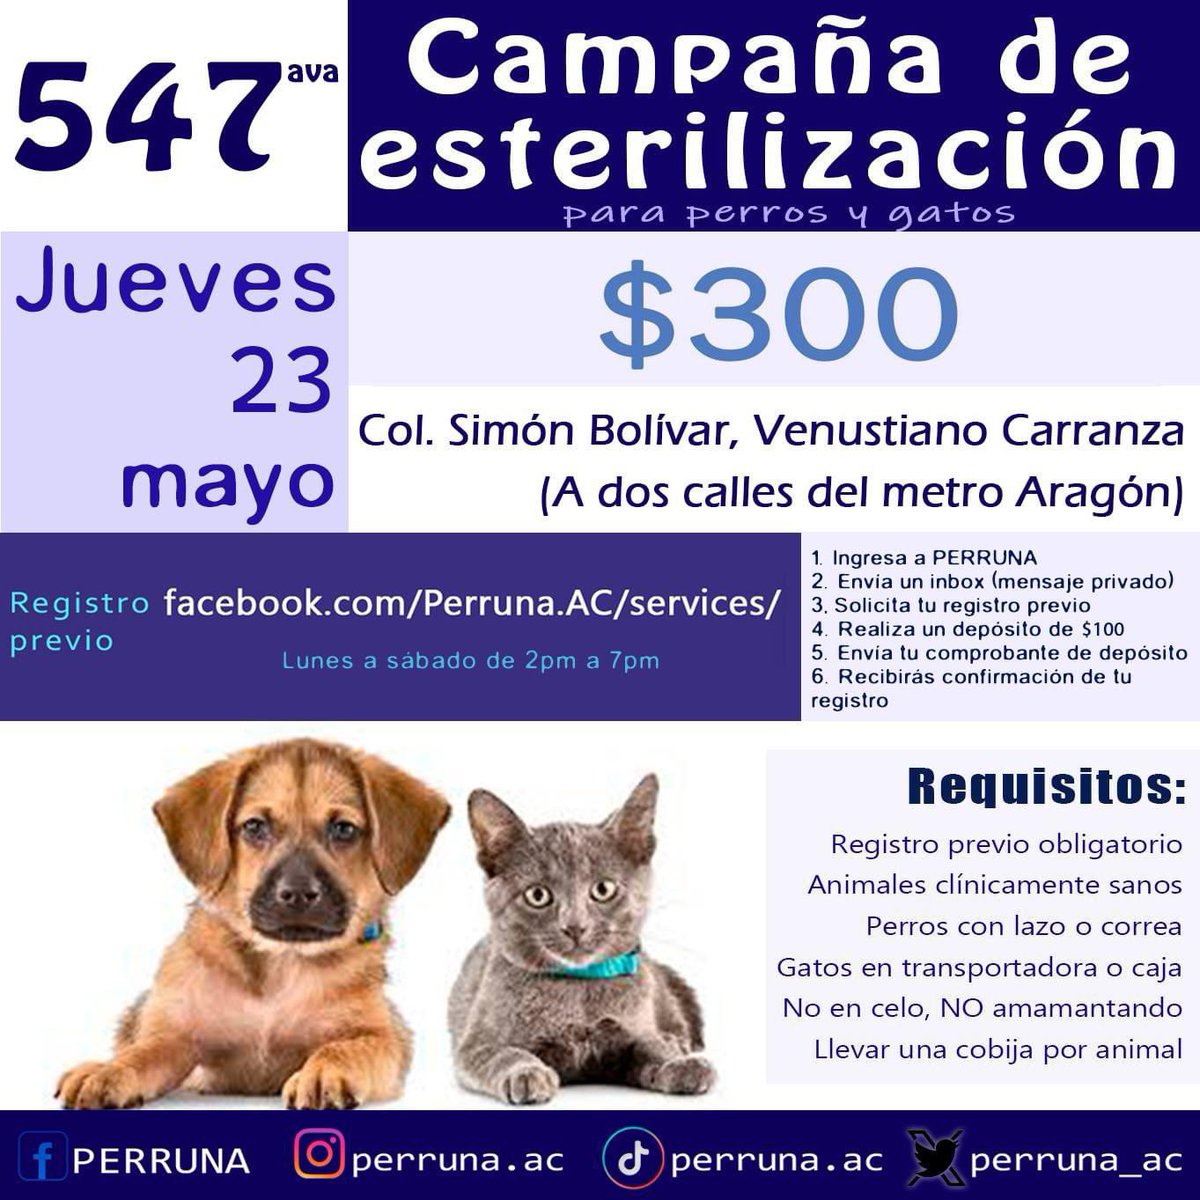 Campaña de esterilización a bajo costo ($300) Consultas veterinarias gratuitas IMPORTANTE: Se atenderá ÚNICAMENTE con REGISTRO PREVIO. #Aragón #VenustianoCarranza #CDMX #VC #esteriliza #vacuna #desparasita